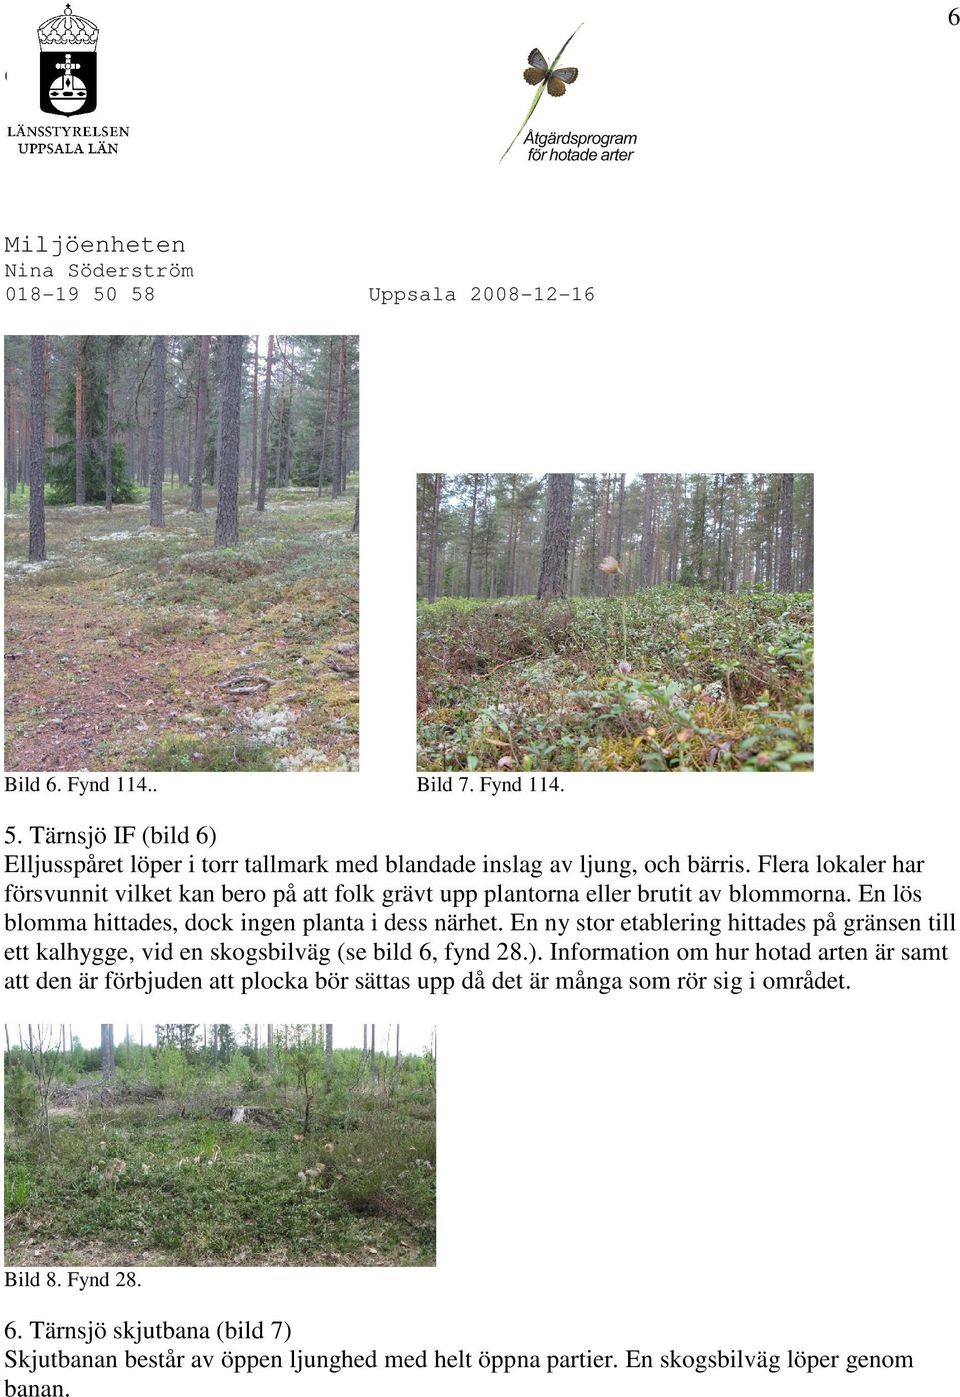 En ny stor etablering hittades på gränsen till ett kalhygge, vid en skogsbilväg (se bild 6, fynd 28.).